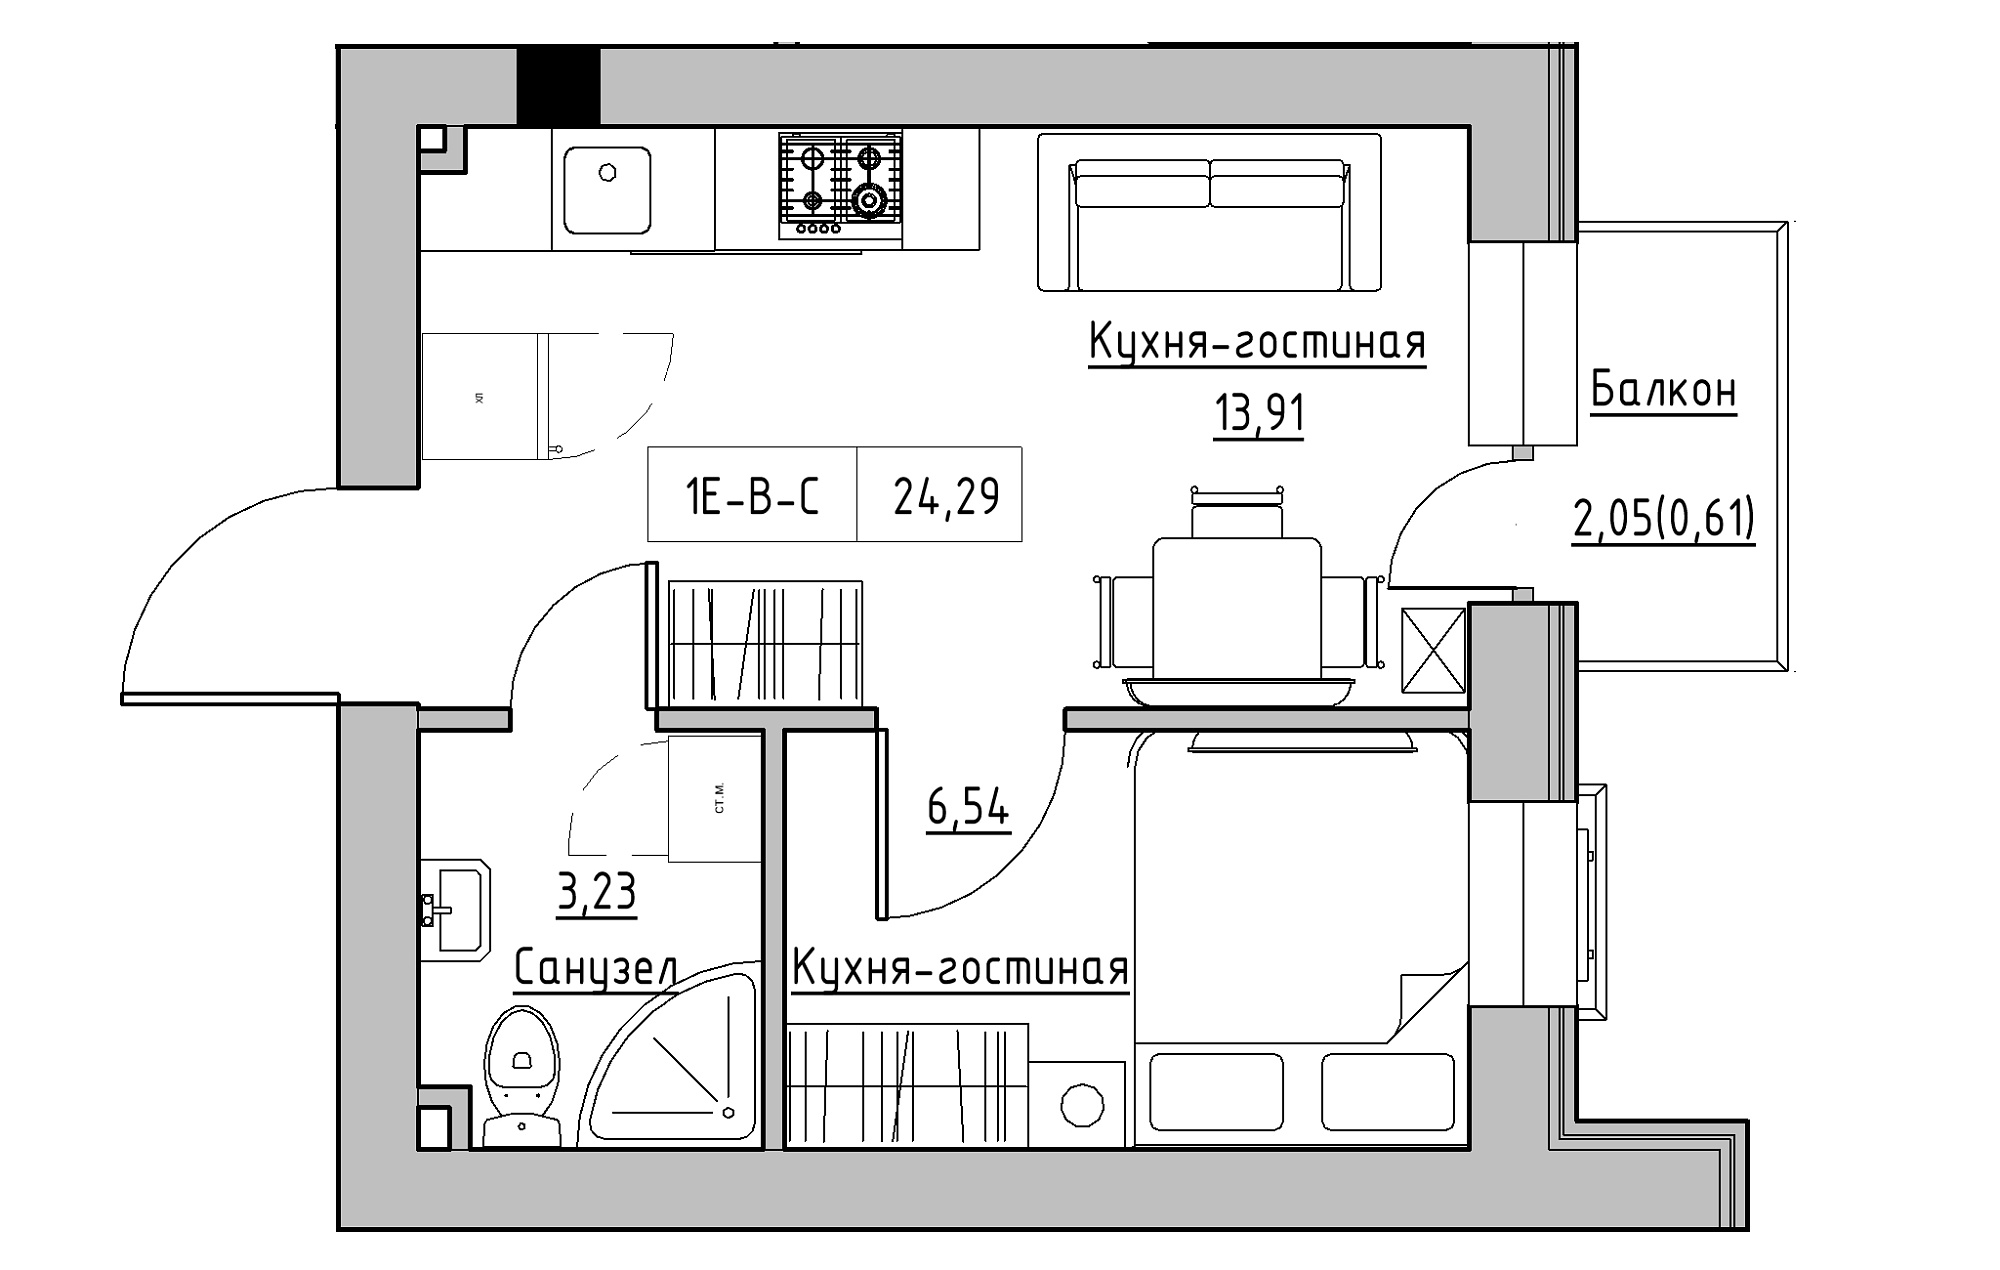 Планировка 1-к квартира площей 24.29м2, KS-018-03/0009.